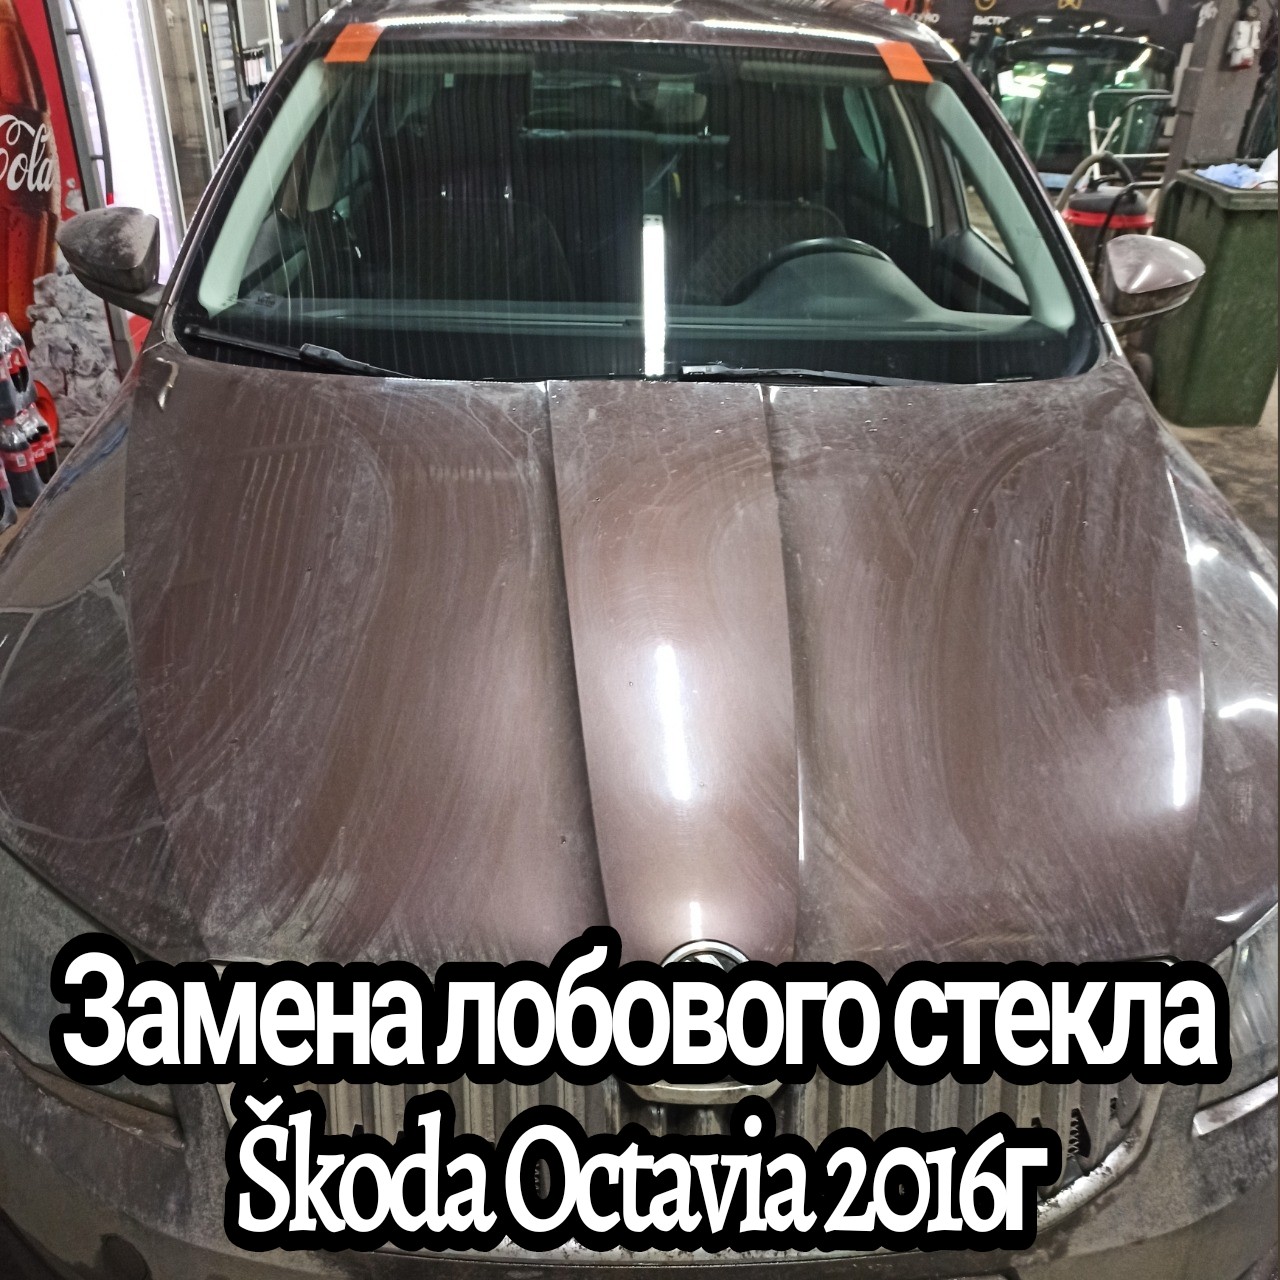 Замена лобового стекла Škoda Octavia 2016гЗамена лобового стекла Škoda Octavia 2016г